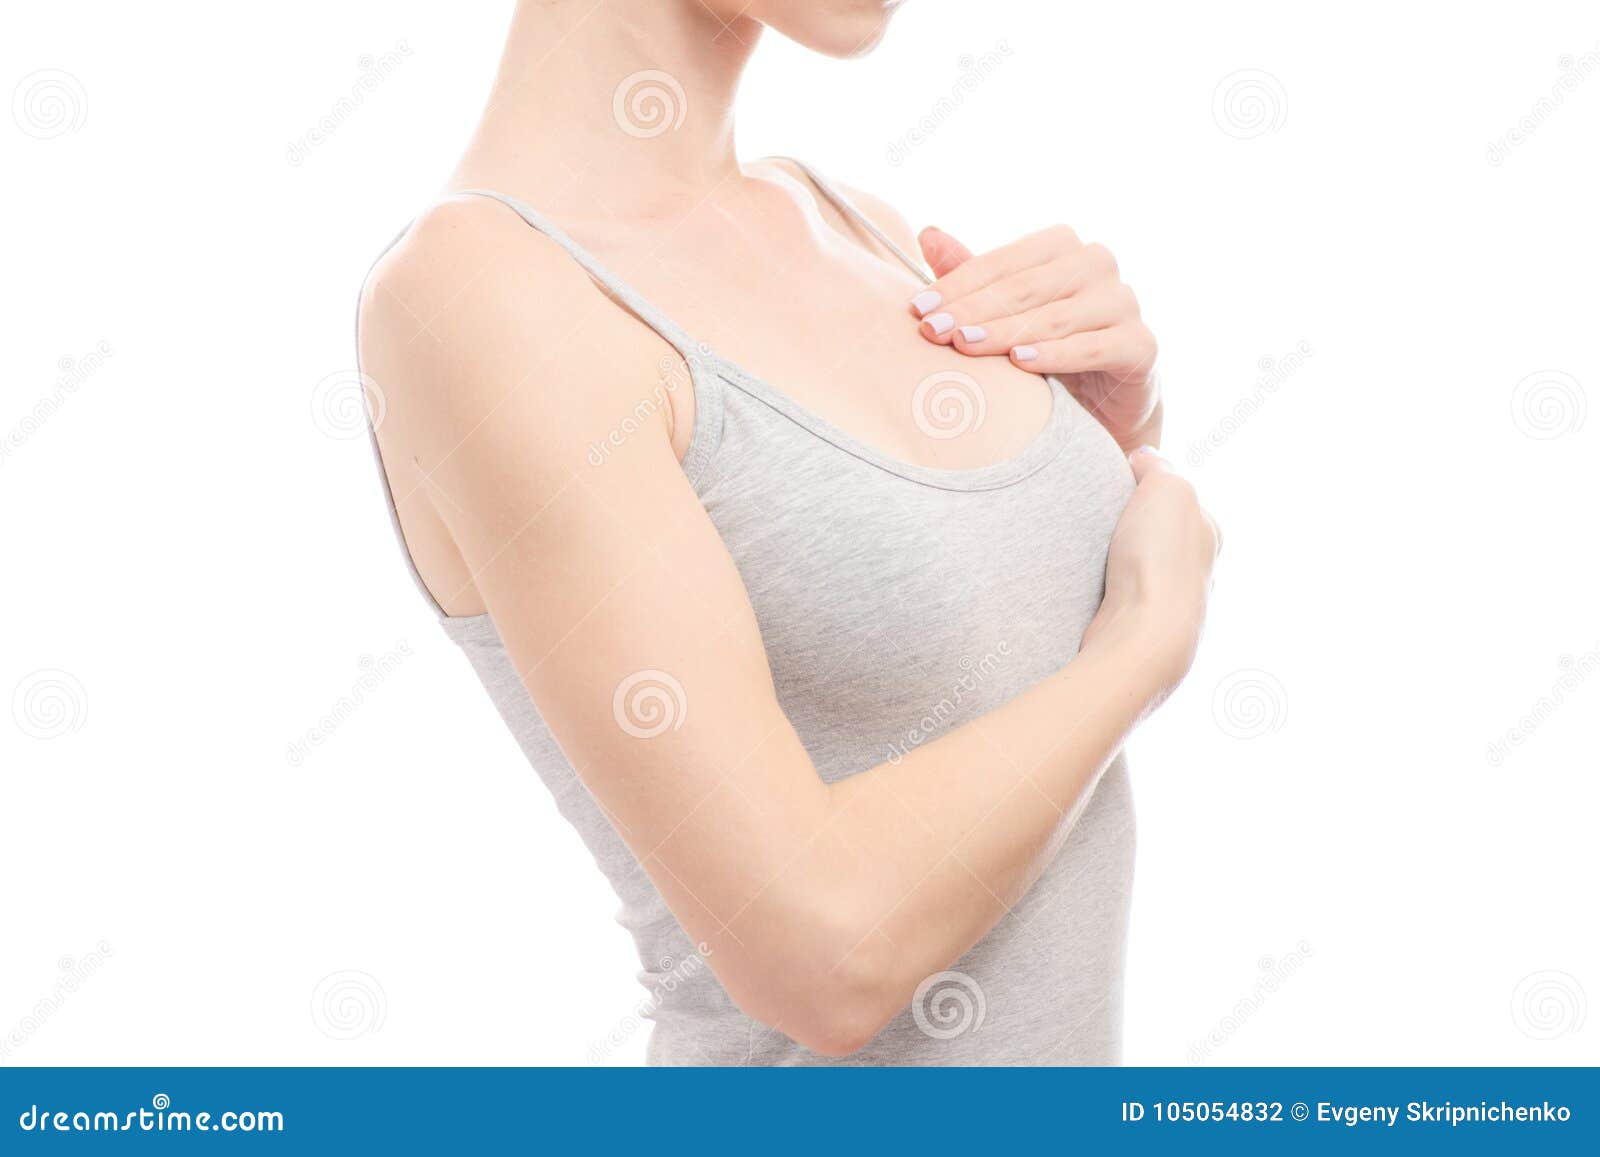 女性乳房健康乳房专家被隔绝 库存图片. 图片 包括有 生活方式, 裸体, 赤裸, 干净, 白种人, 成人 - 105054557